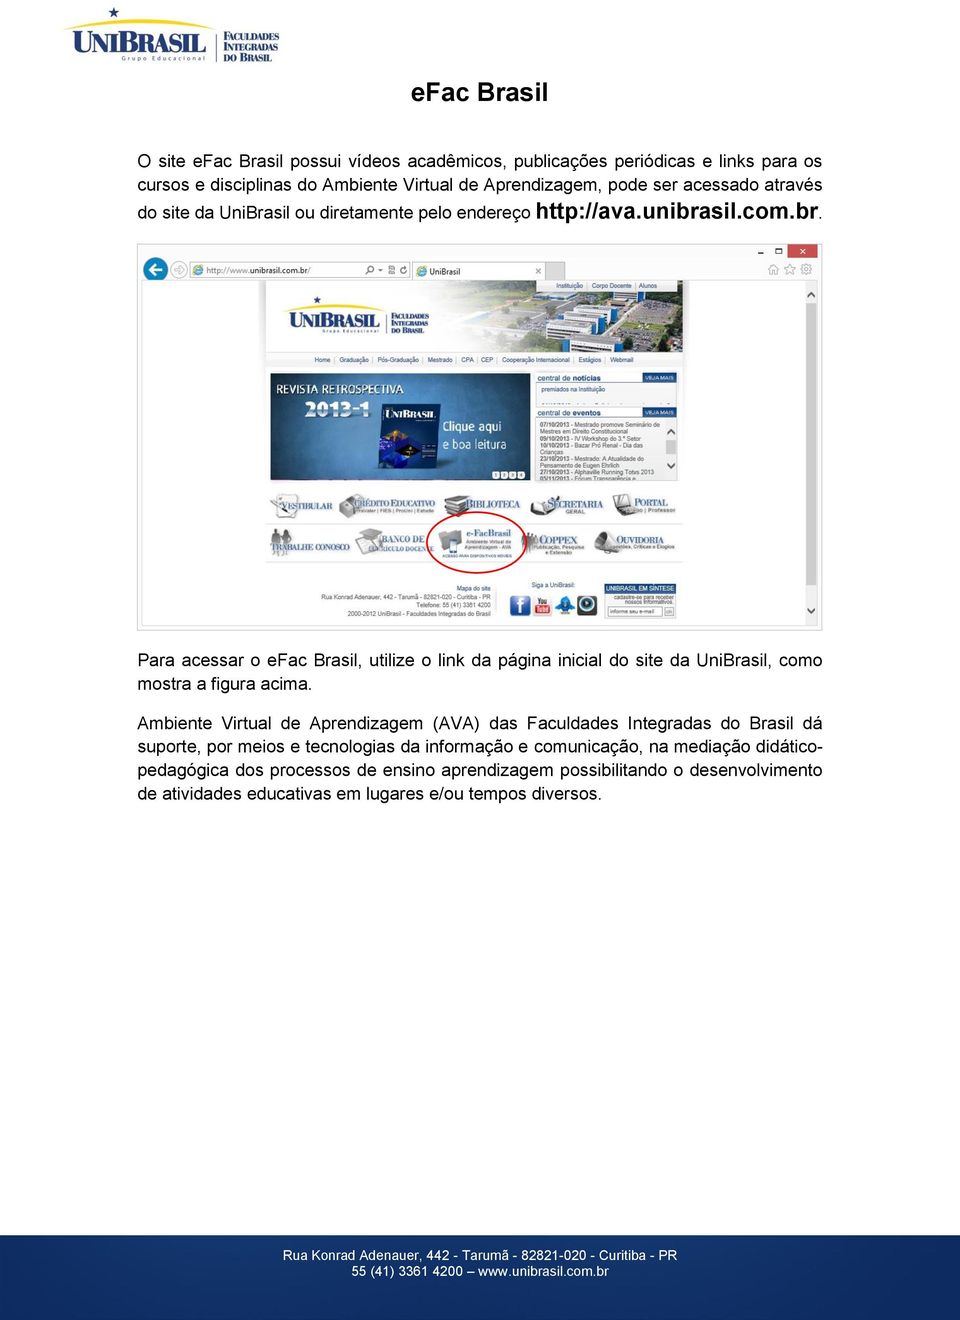 sil.com.br. Para acessar o efac Brasil, utilize o link da página inicial do site da UniBrasil, como mostra a figura acima.